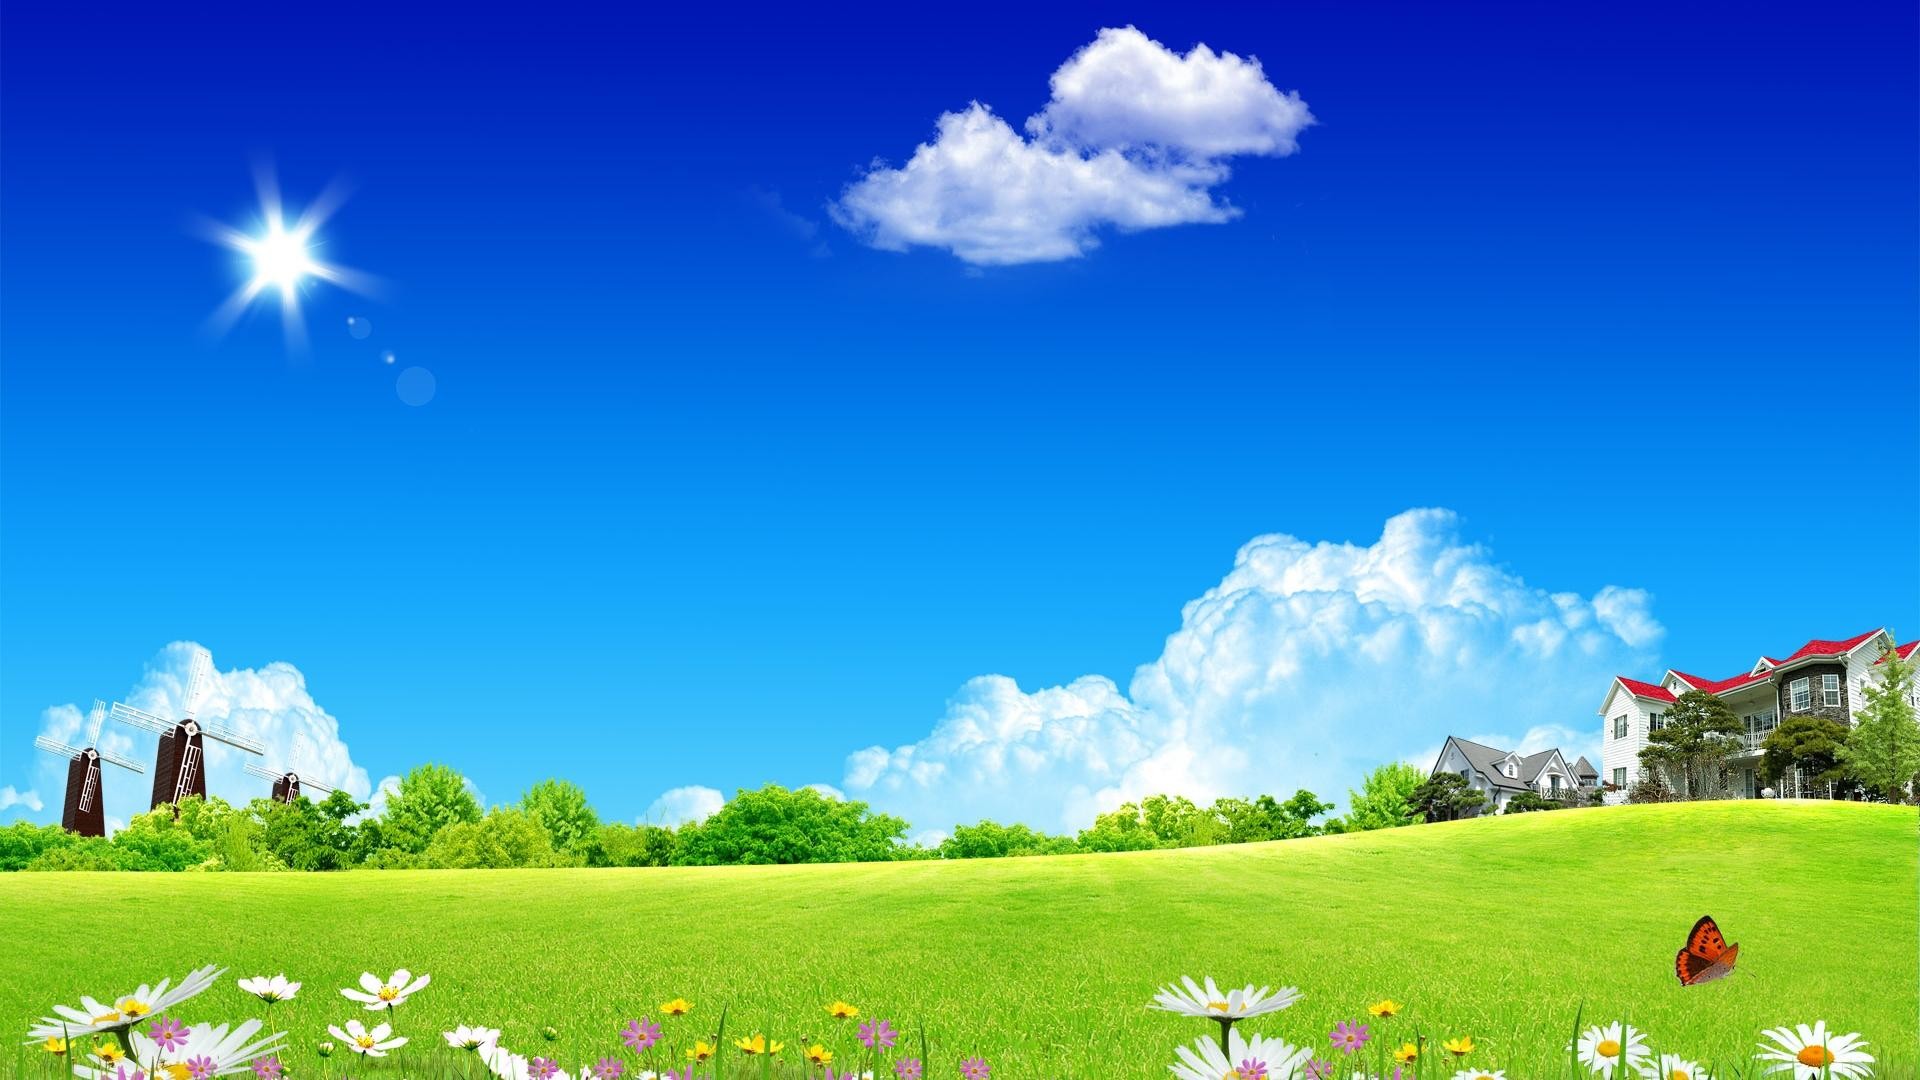 1920x1080  Dream garden of summer scenery desktop backgrounds wide  wallpapers:1280x800,1440x900,1680x1050